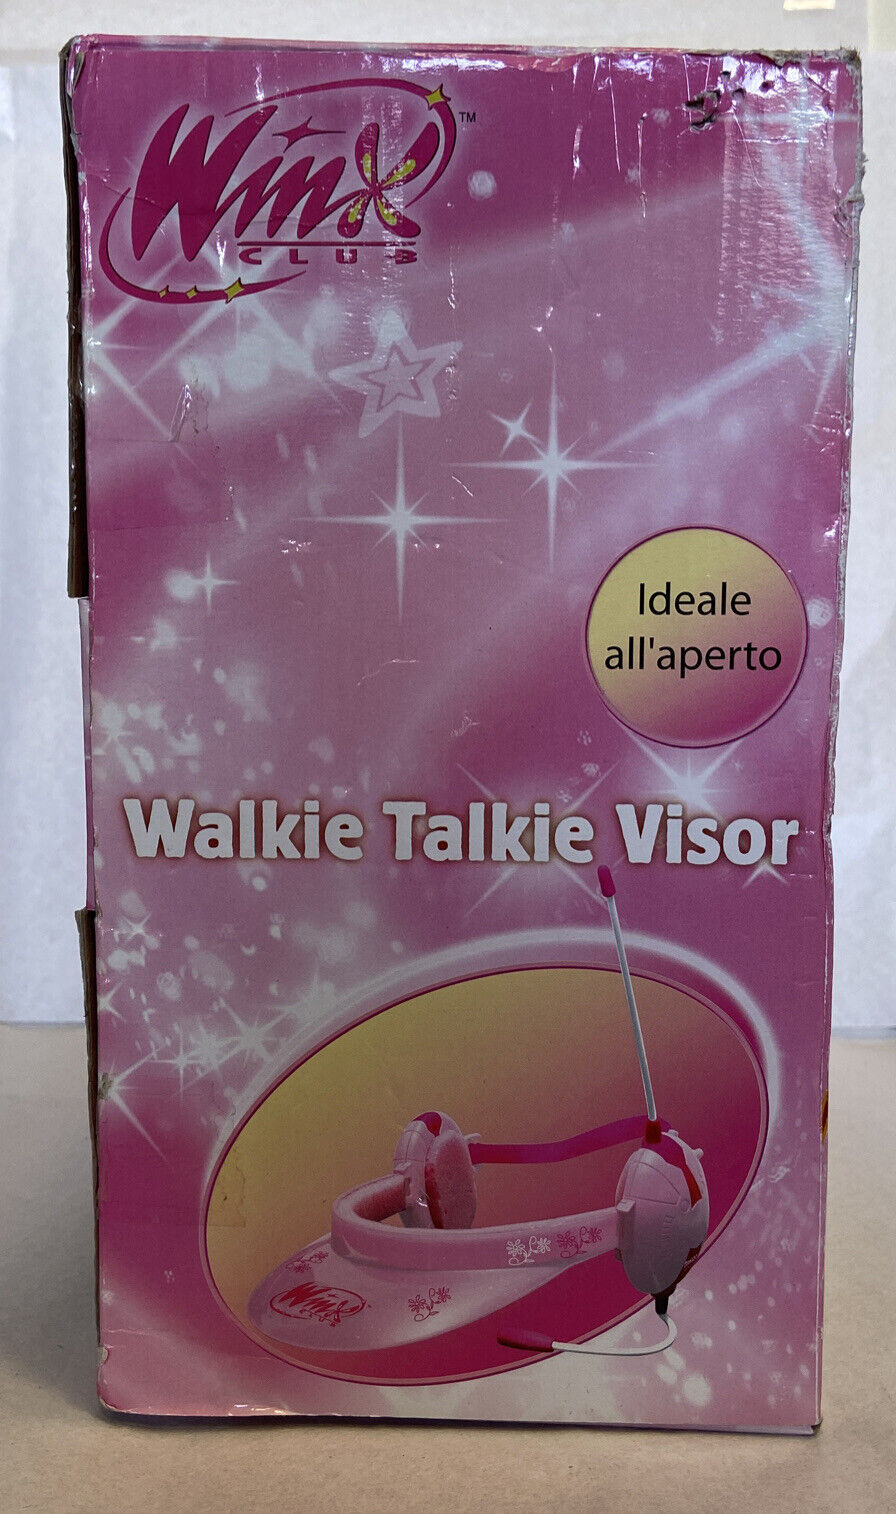 Walkie Talkie Visor Winx